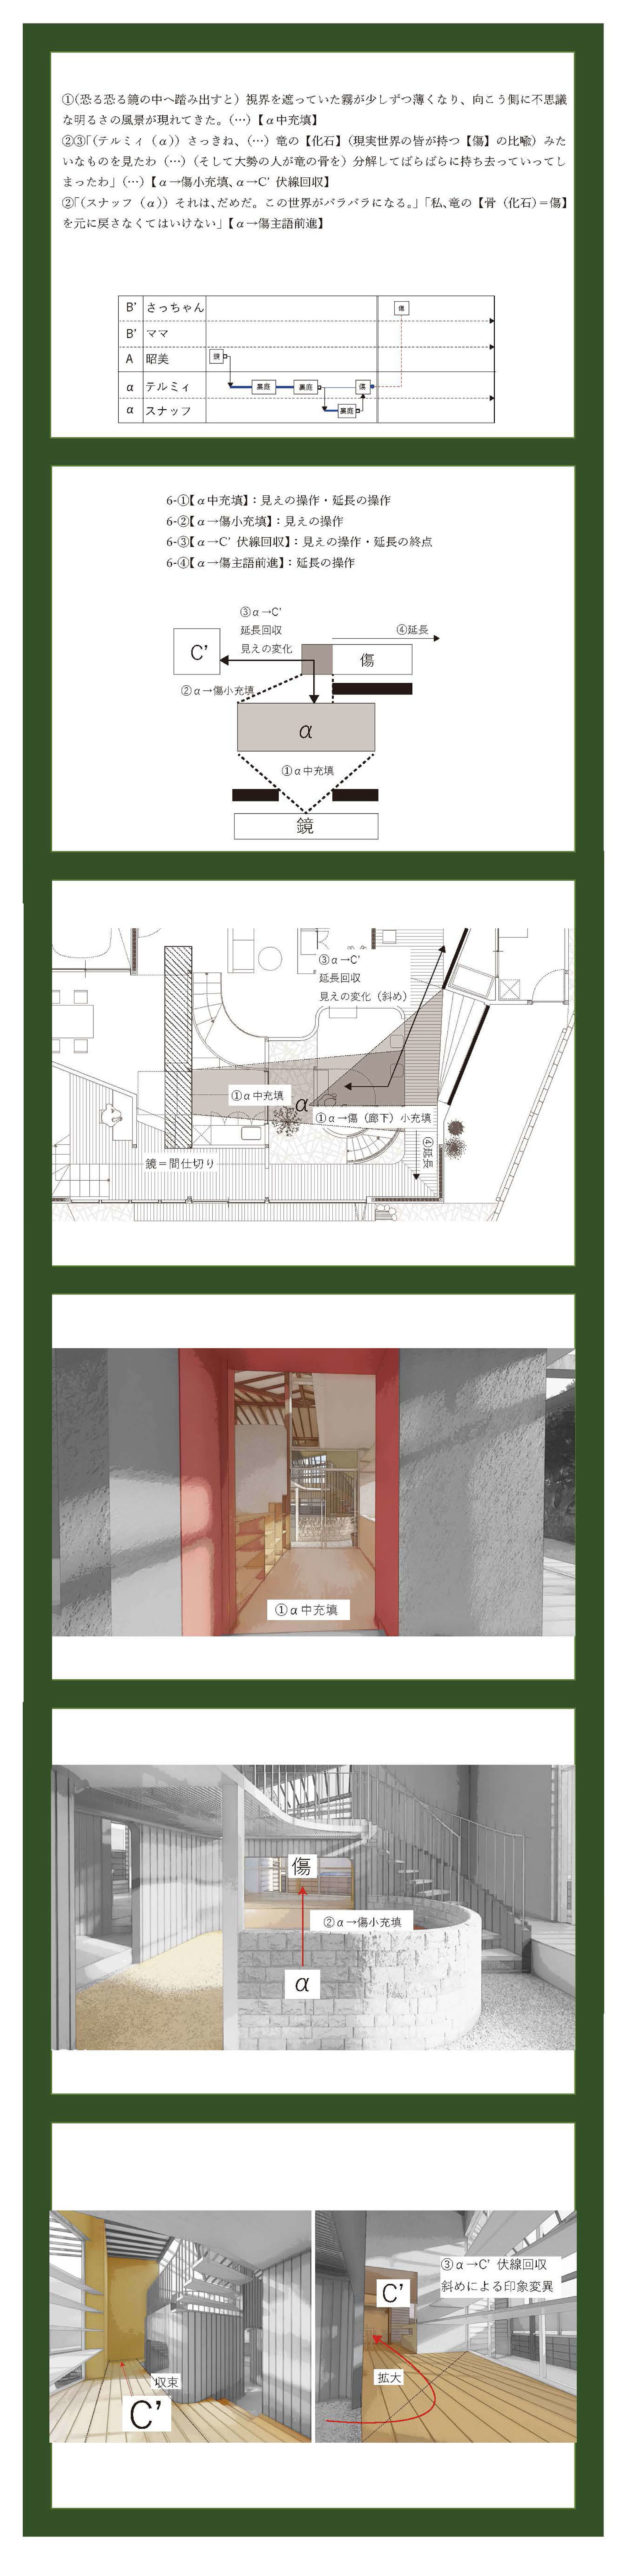 小説構造を応用した建築の提案 -梨木香歩『裏庭』の分析を通して--8